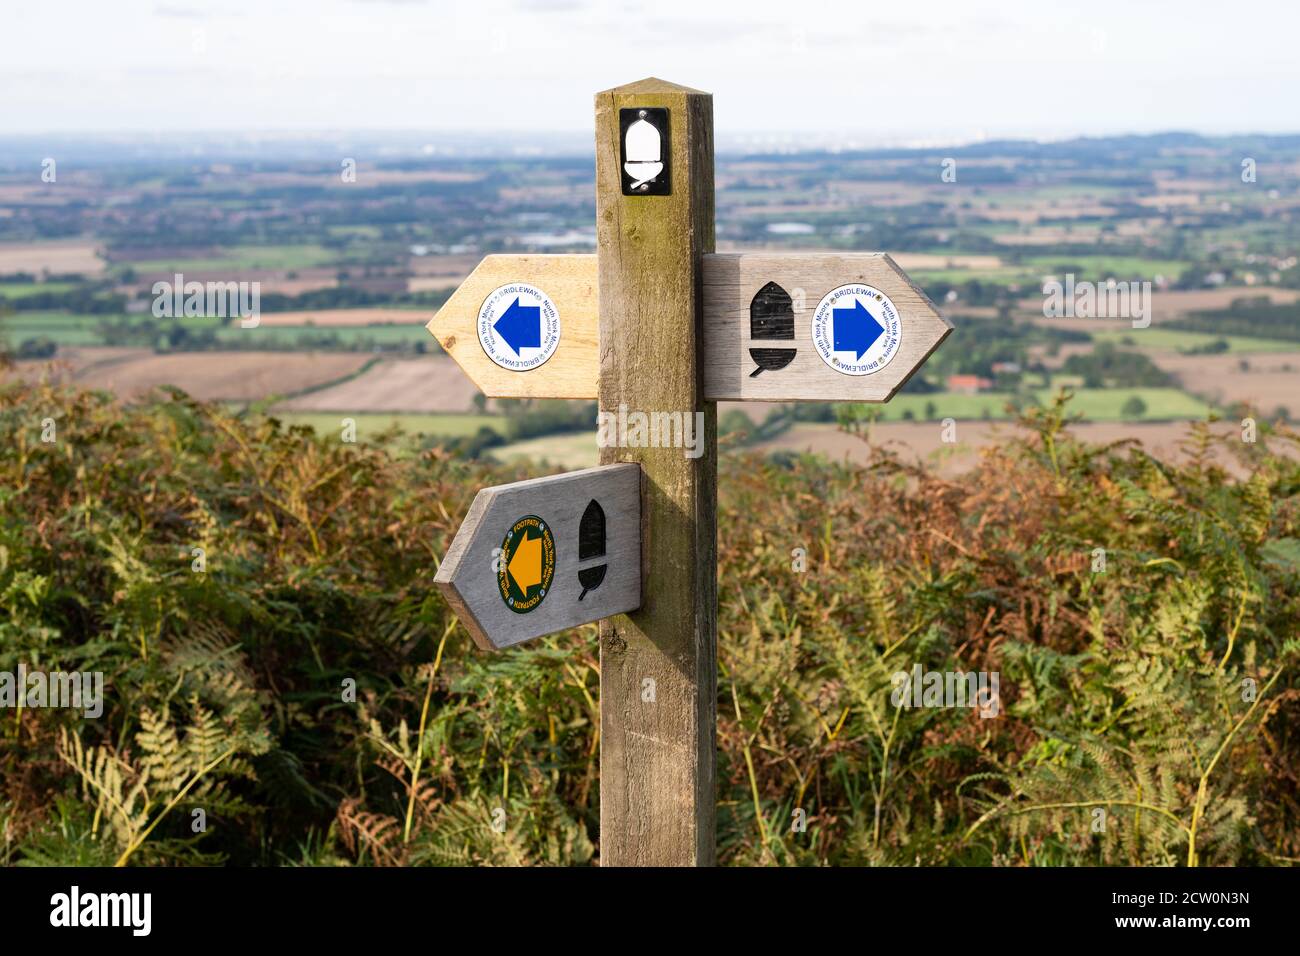 Fußpfadsymbole - blauer Pfeil (Brückenweg), gelber Pfeil (Fußweg), schwarze Eichel (Nationalweg) auf Fußpfadzeichen auf den North York Moors, England, Großbritannien Stockfoto